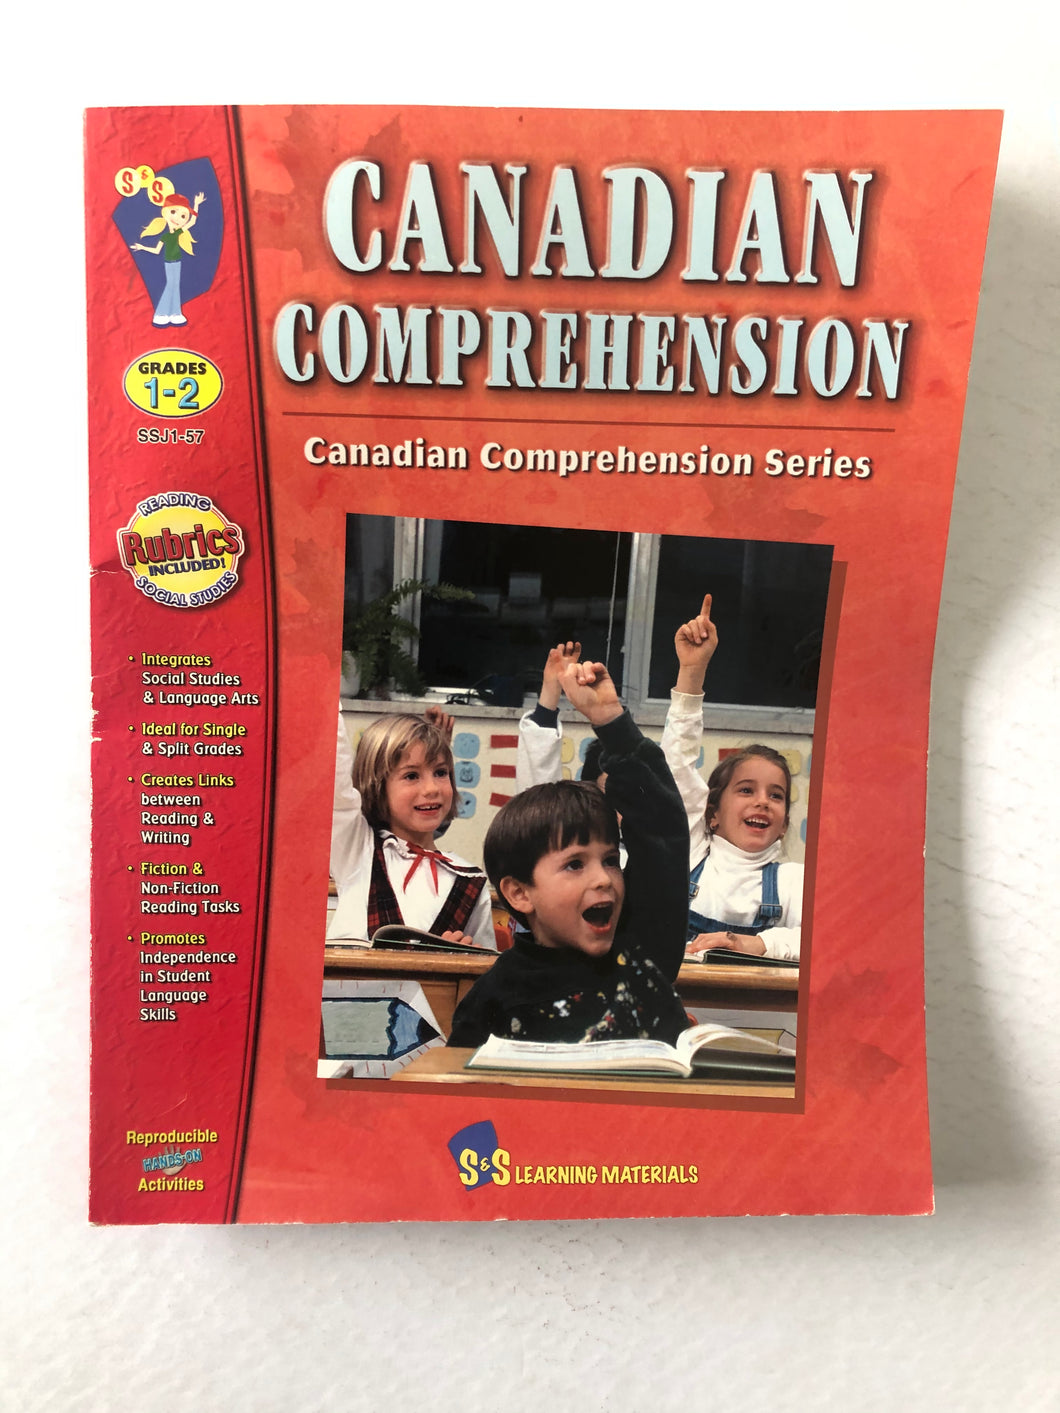 Canada comprehension - Grades 1-2